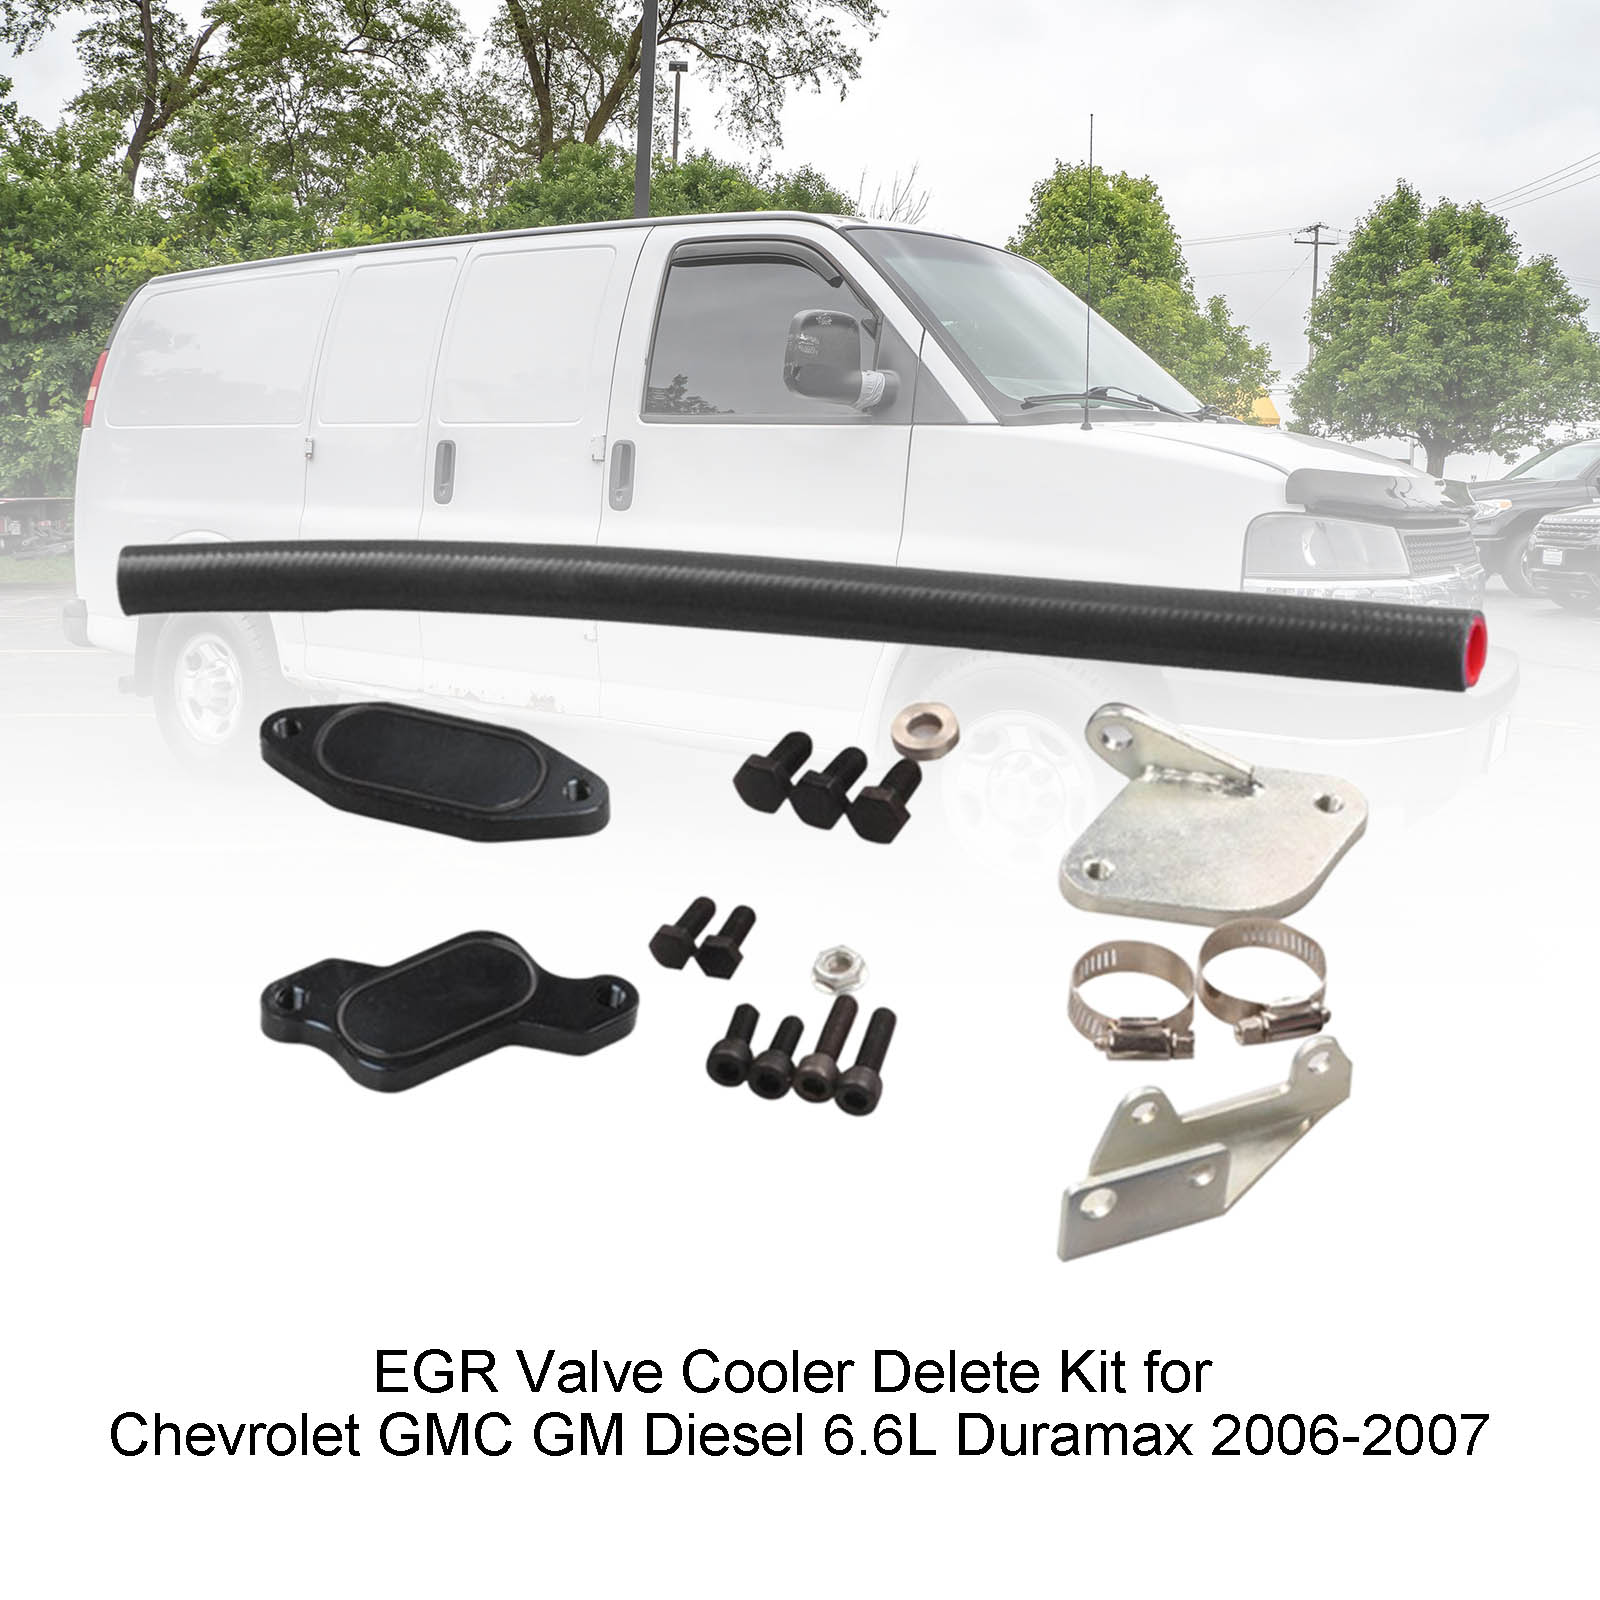 Chevrolet 2006-2007 GMC GM Diesel 6.6L Duramax EGR Valve Cooler Delete Kit - 0